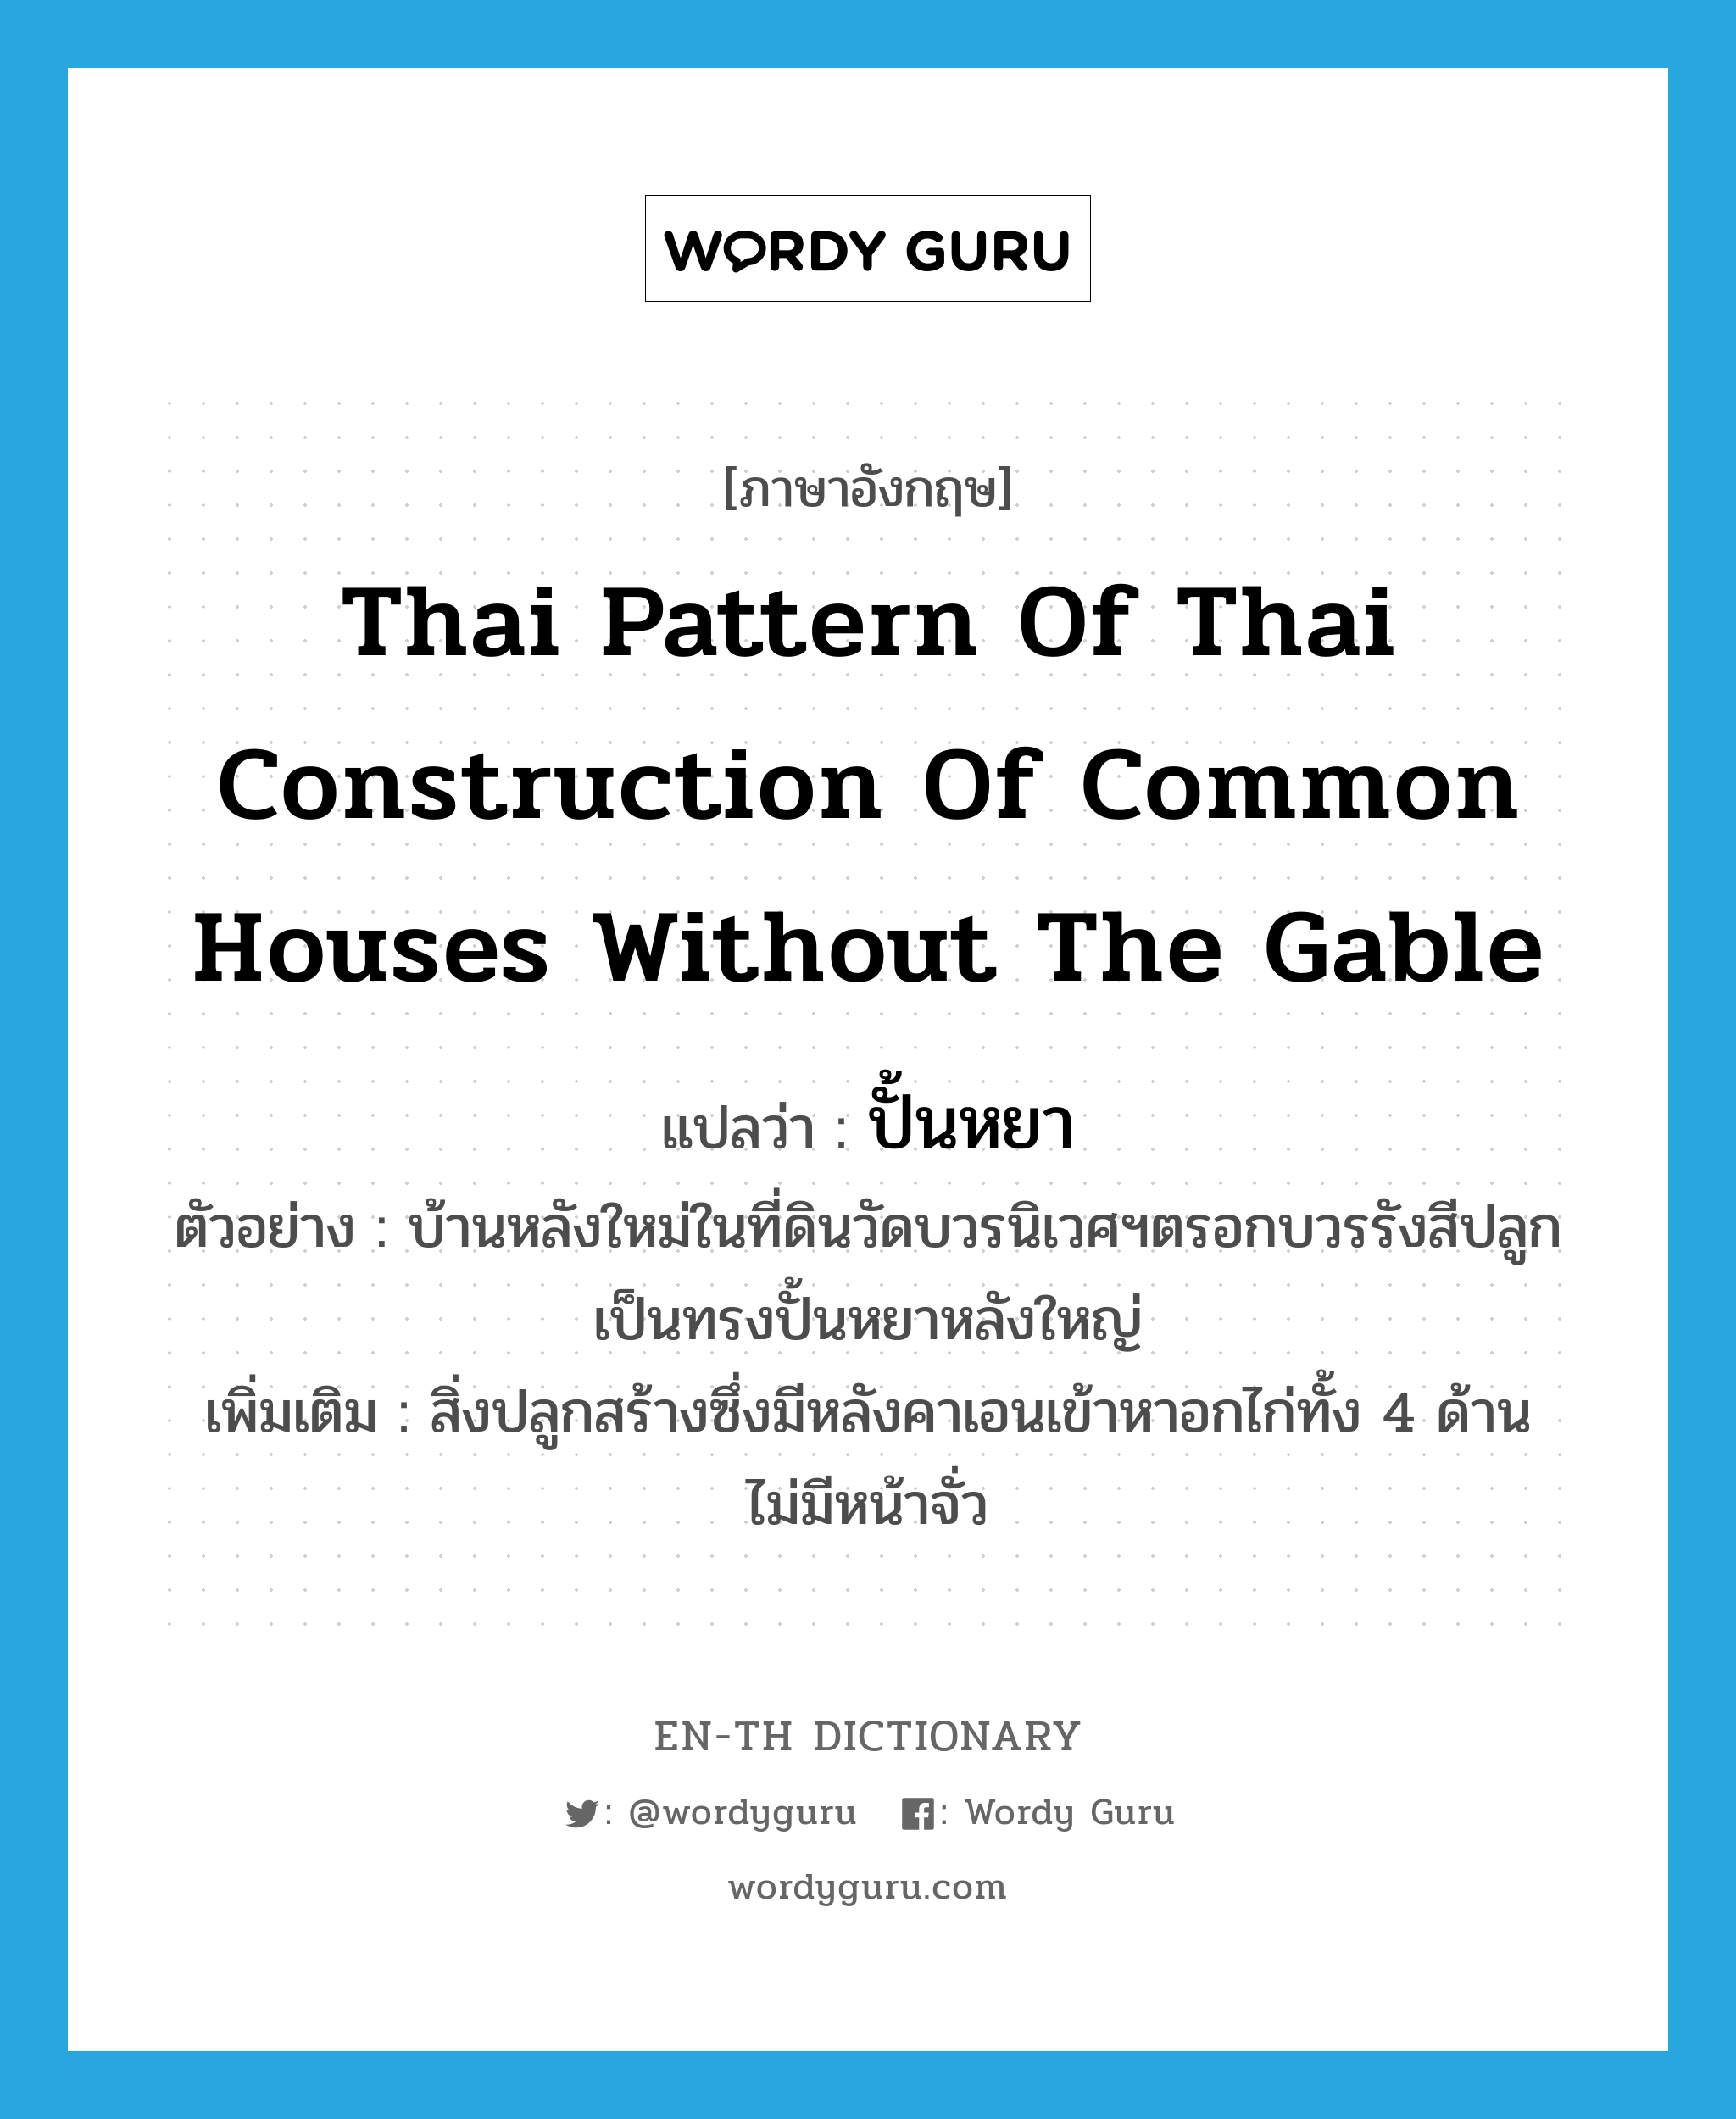 ปั้นหยา ภาษาอังกฤษ?, คำศัพท์ภาษาอังกฤษ ปั้นหยา แปลว่า Thai pattern of Thai construction of common houses without the gable ประเภท N ตัวอย่าง บ้านหลังใหม่ในที่ดินวัดบวรนิเวศฯตรอกบวรรังสีปลูกเป็นทรงปั้นหยาหลังใหญ่ เพิ่มเติม สิ่งปลูกสร้างซึ่งมีหลังคาเอนเข้าหาอกไก่ทั้ง 4 ด้าน ไม่มีหน้าจั่ว หมวด N